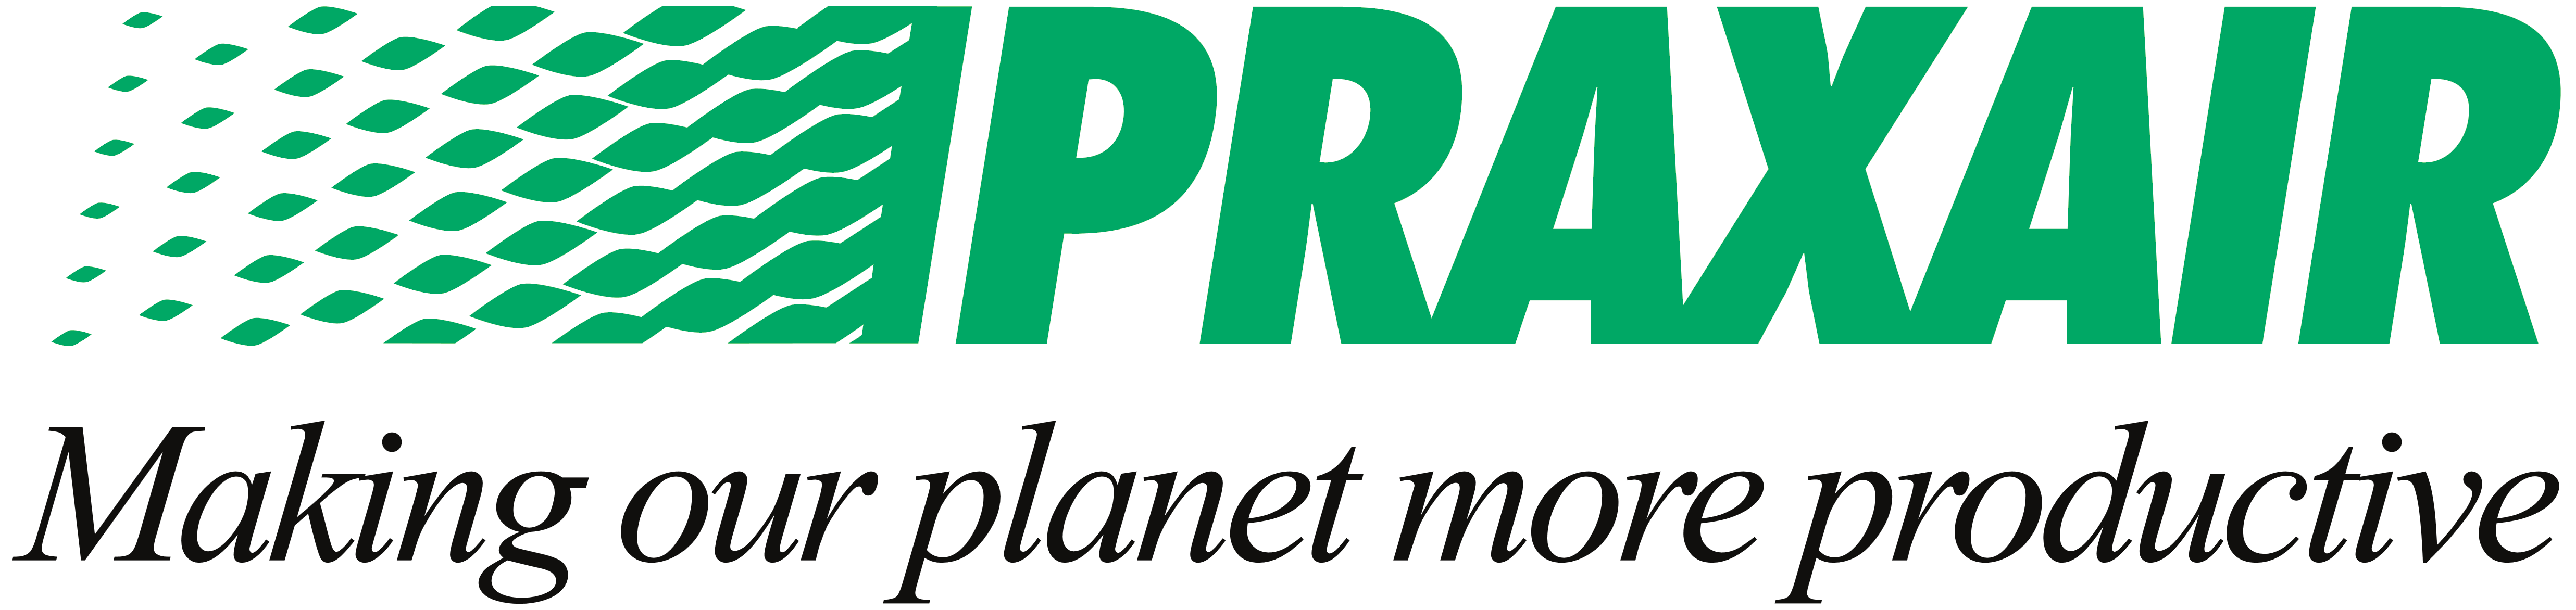 Praxair – Logos Download